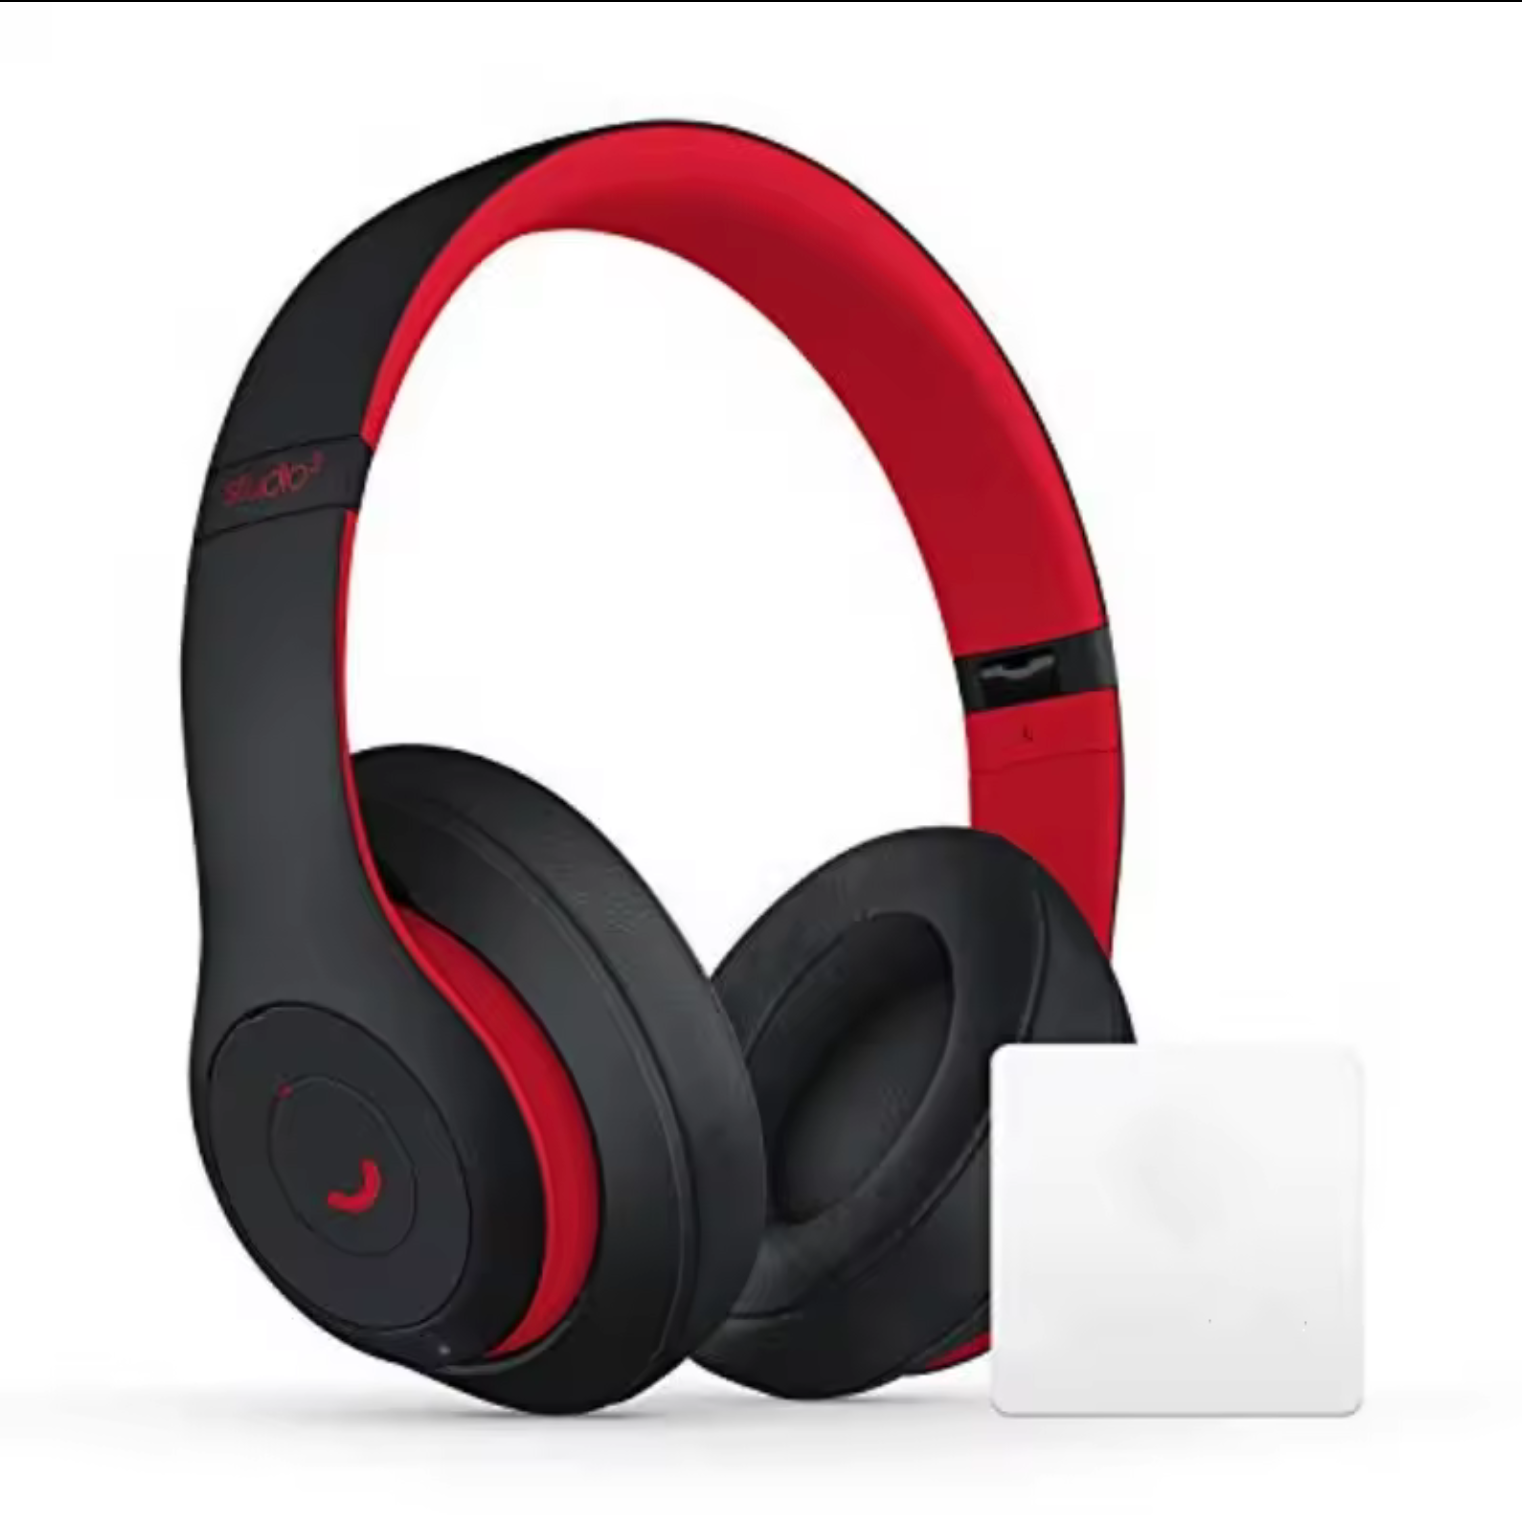 Studio 3 Wireless Noise Cancelling Earbuds In-ear Earphone Type Sport Running Music Headphones